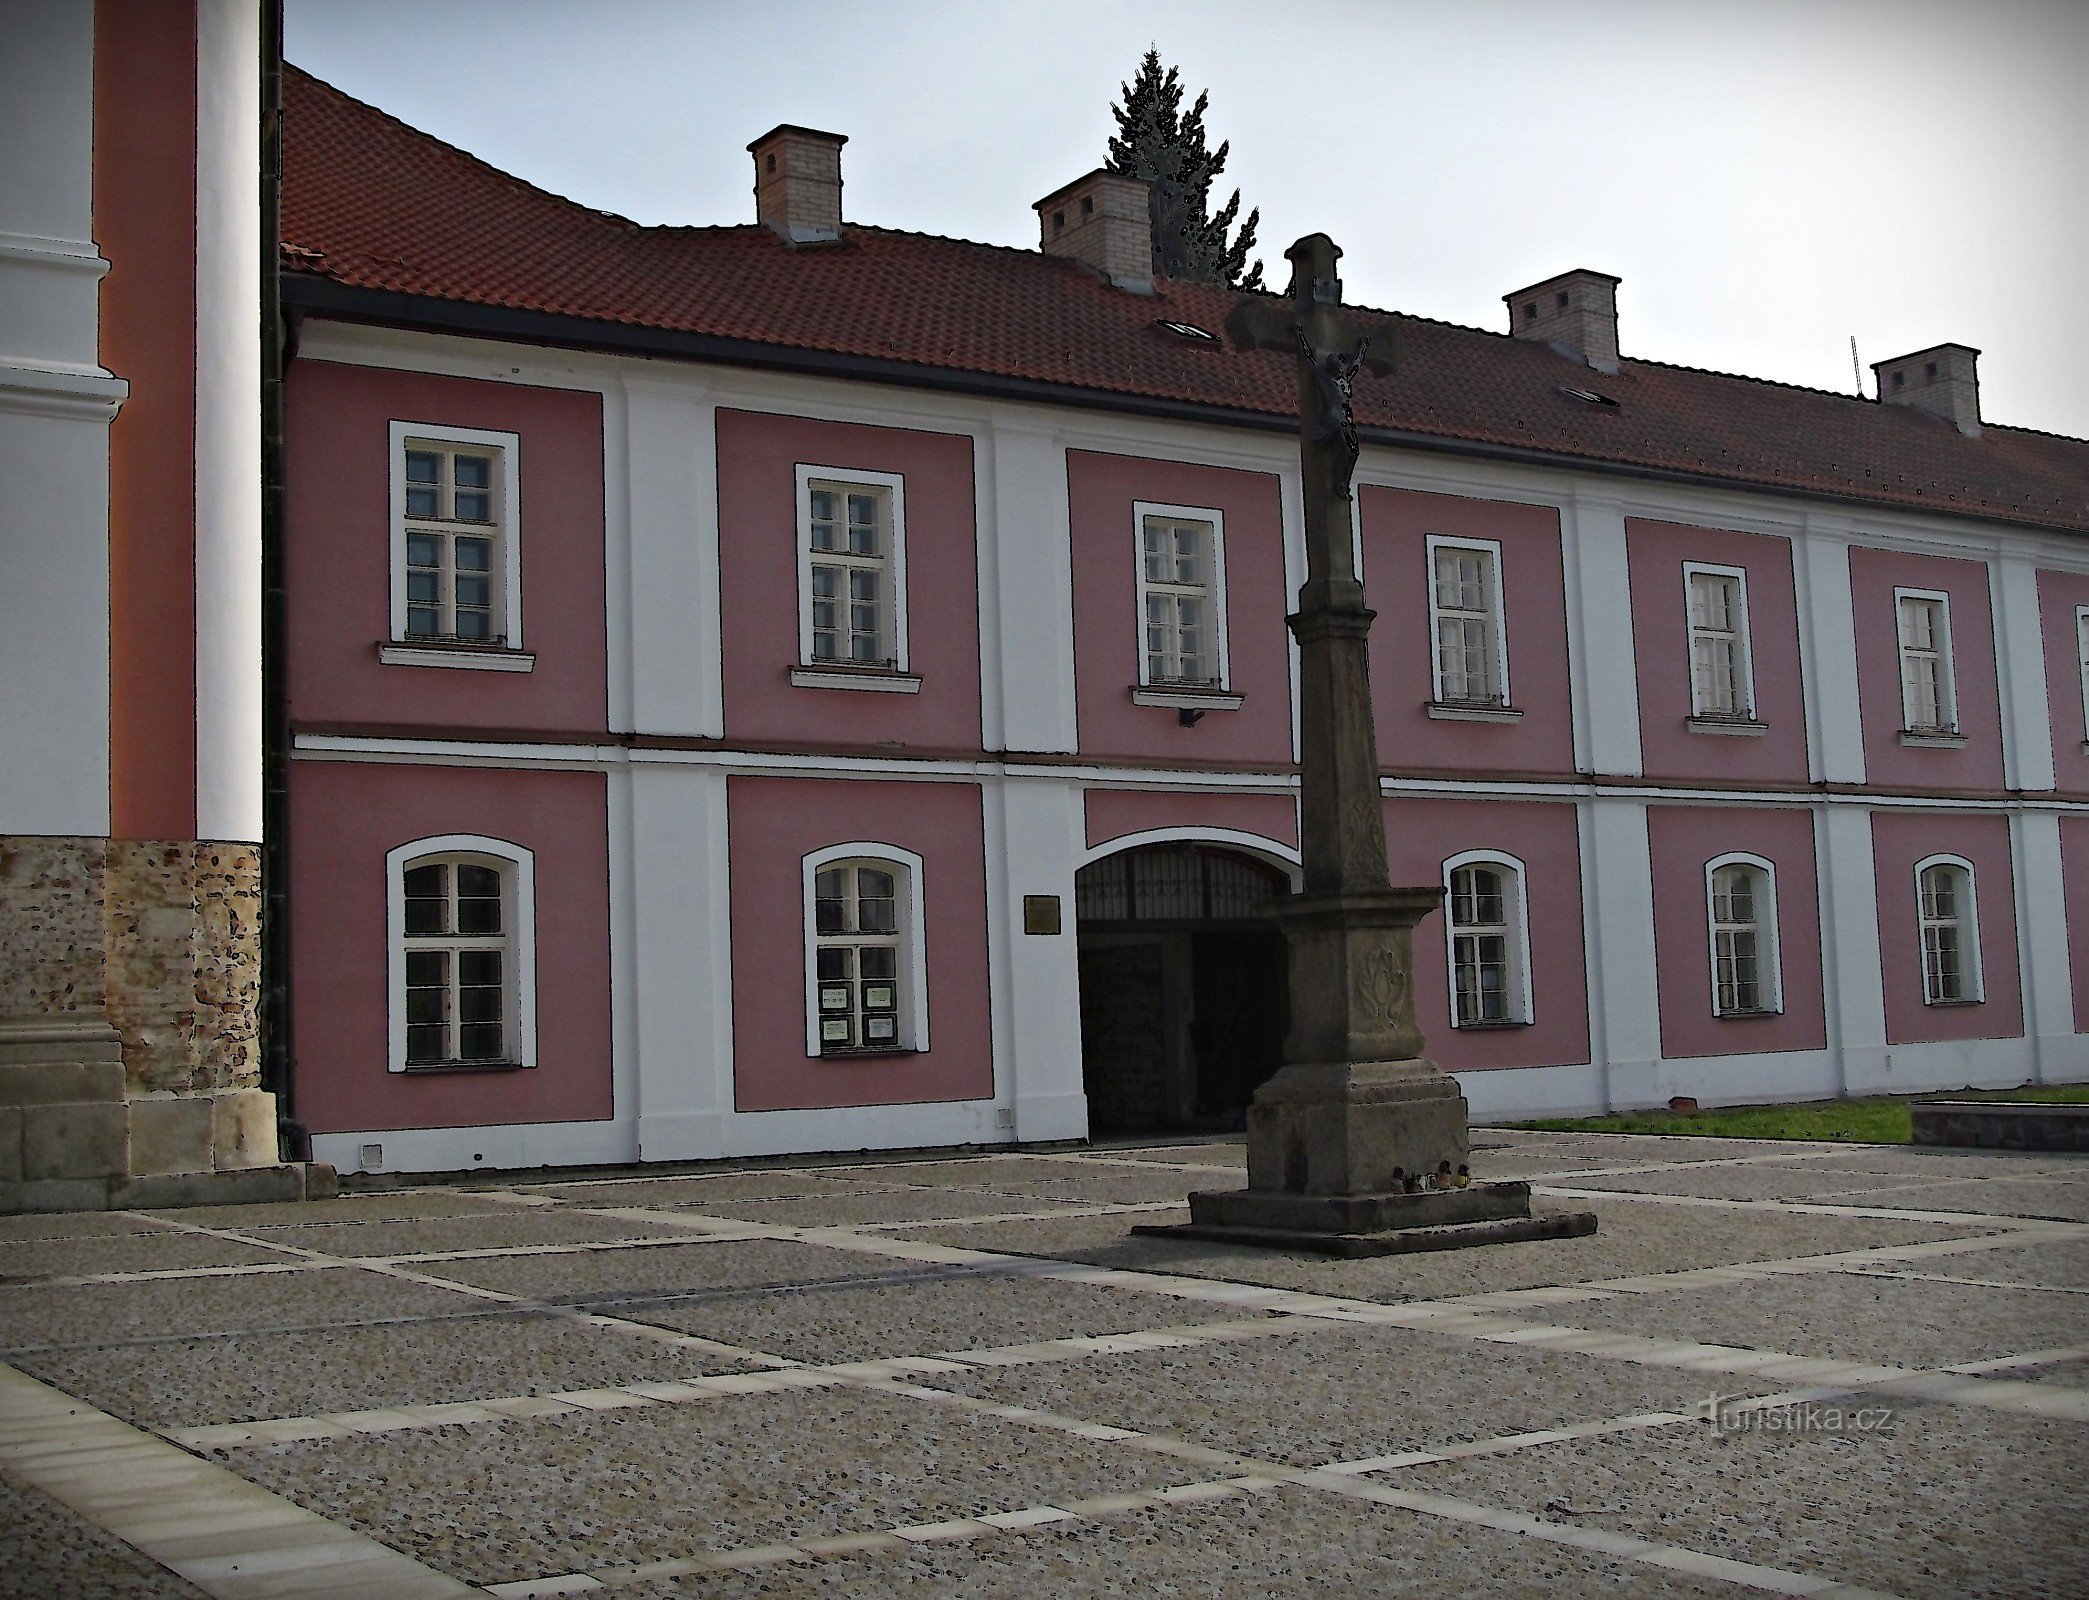 Štípa lähellä Zlíniä - pyhiinvaelluskirkon paikka